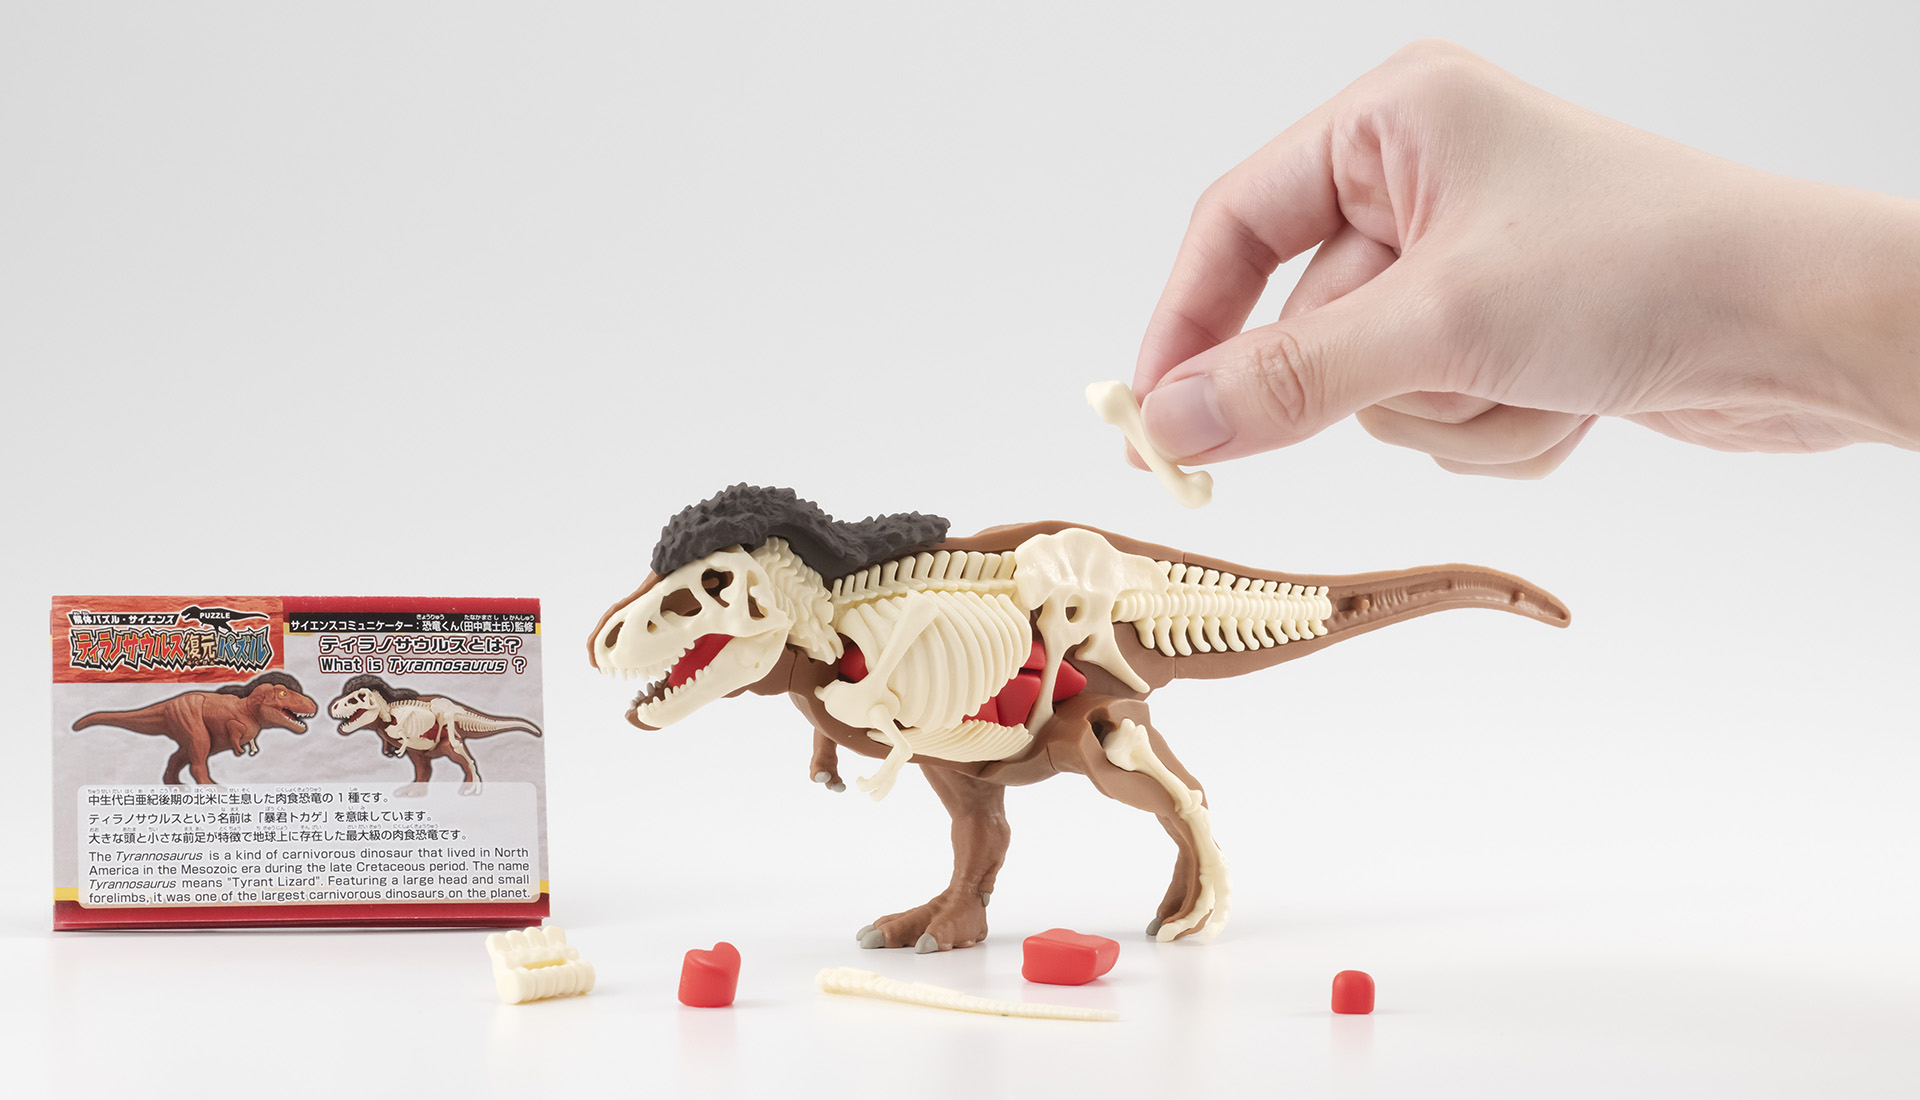 骨と内臓を組み立ててティラノサウルスを復元！ 立体型パズル「ティラノサウルス復元パズル」が11月下旬に発売 - HOBBY Watch